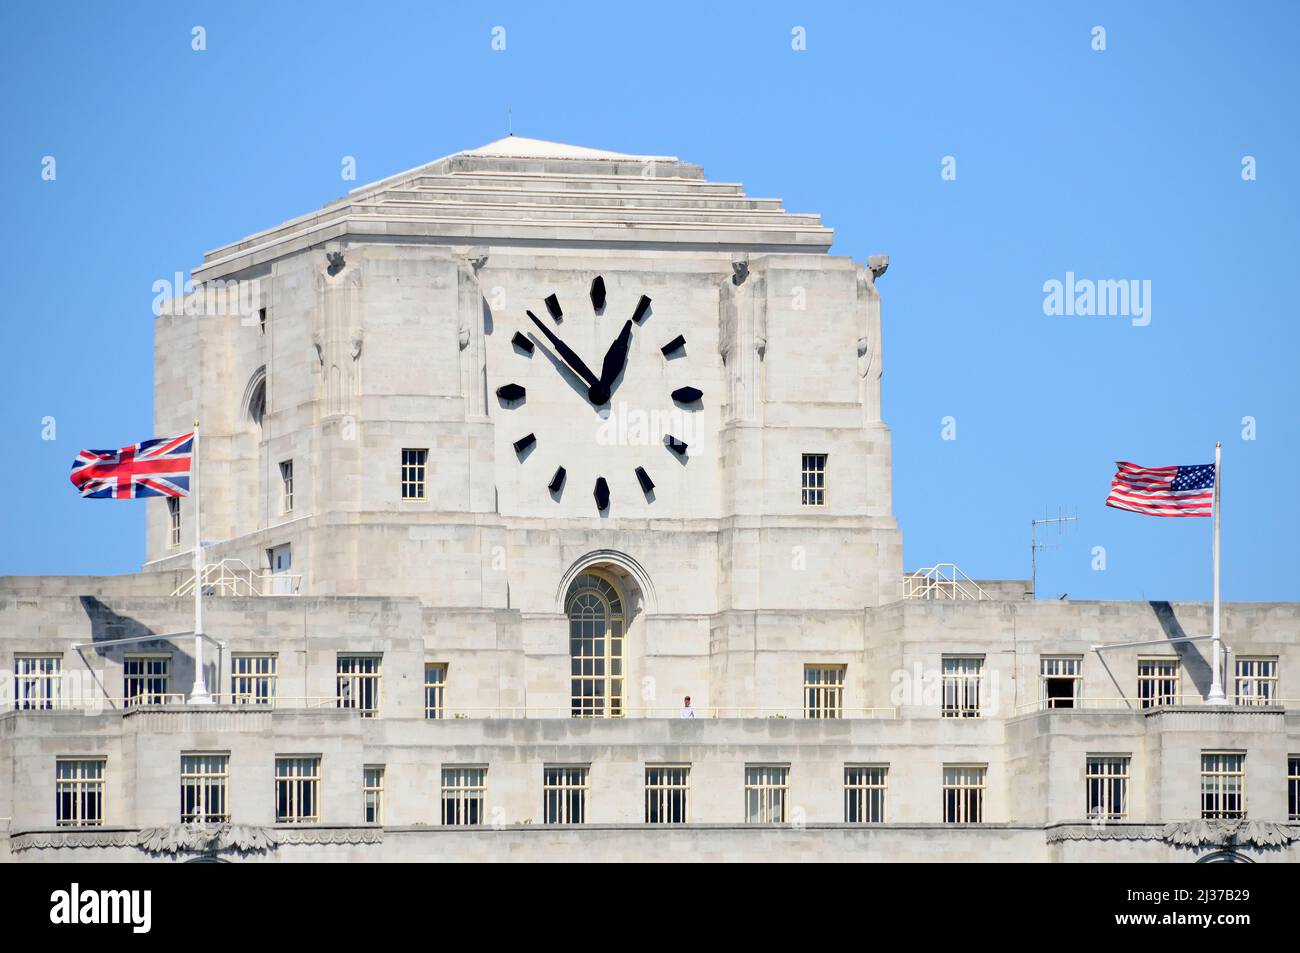 El reloj más grande* en el Reino Unido Big Benzene en el punto de referencia de Londres Shell Mex House grado ii edificio de oficinas de la lista de Union Jack & Stars & Stripes banderas Inglaterra Reino Unido Foto de stock